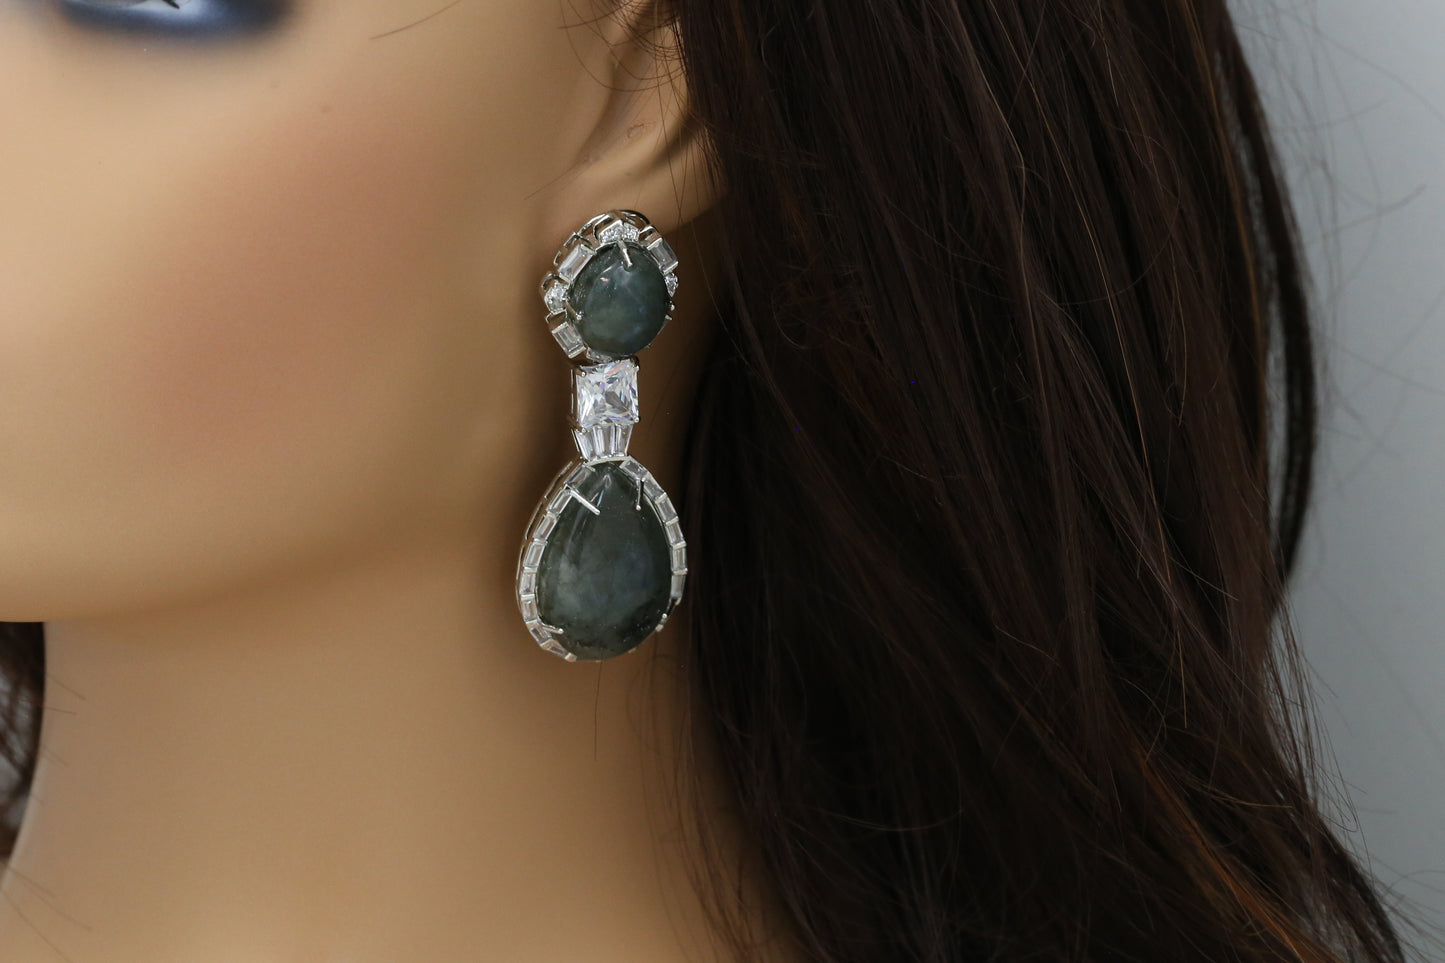 Kanak Semiprecious Stone Earrings - Labradorite